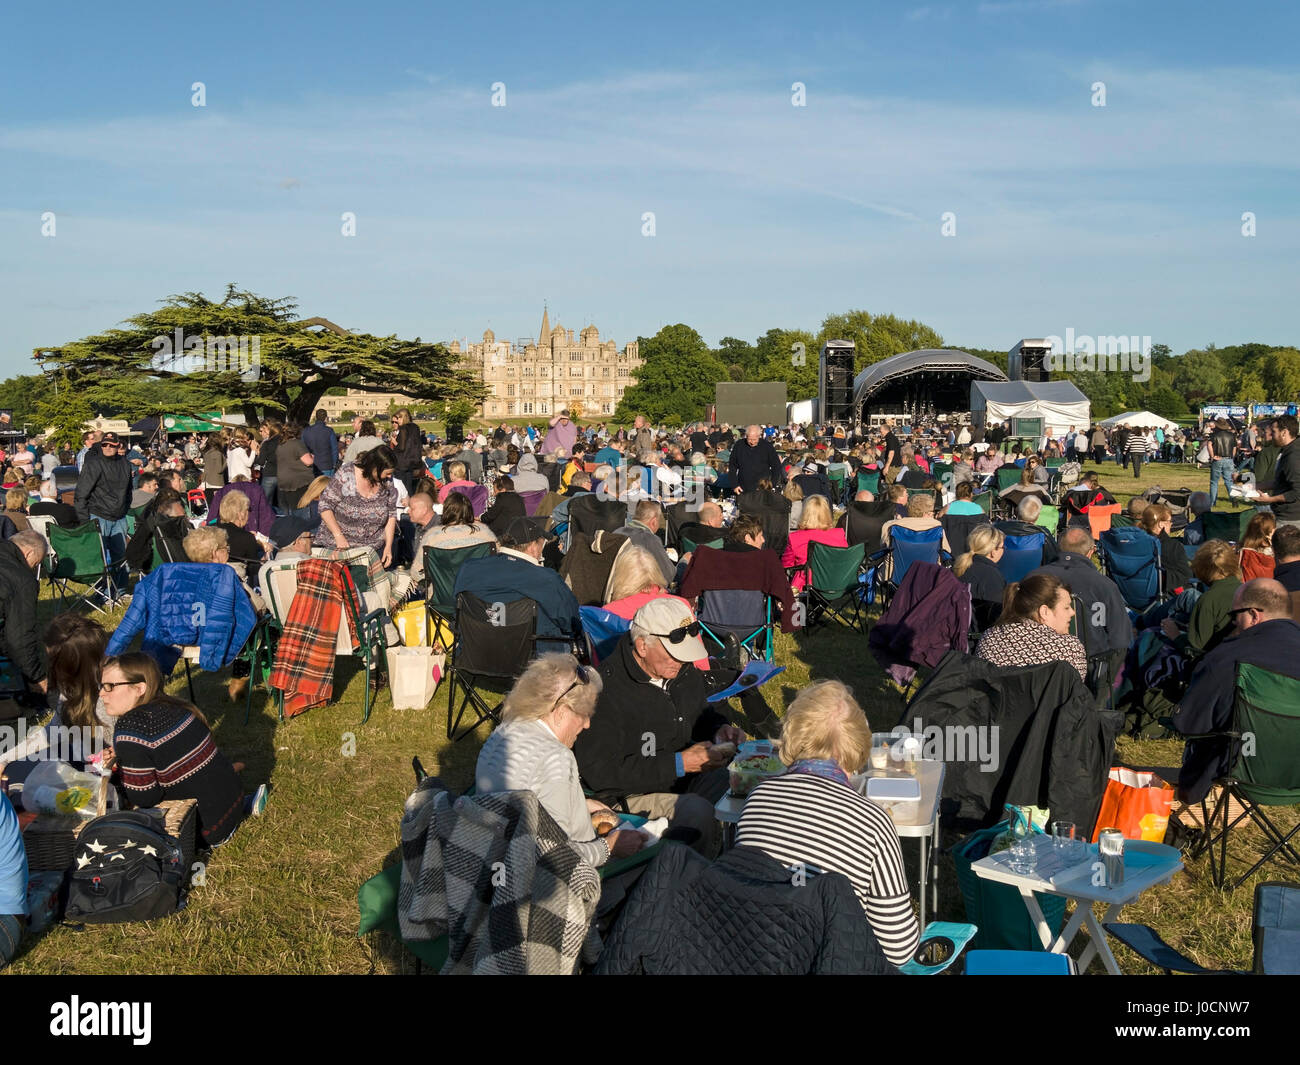 En attente de l'auditoire pour l'extérieur Status Quo concert de rock à Burghley House Park au cours de l'été 2015, Stamford, Lincolnshire, Angleterre, RU Banque D'Images